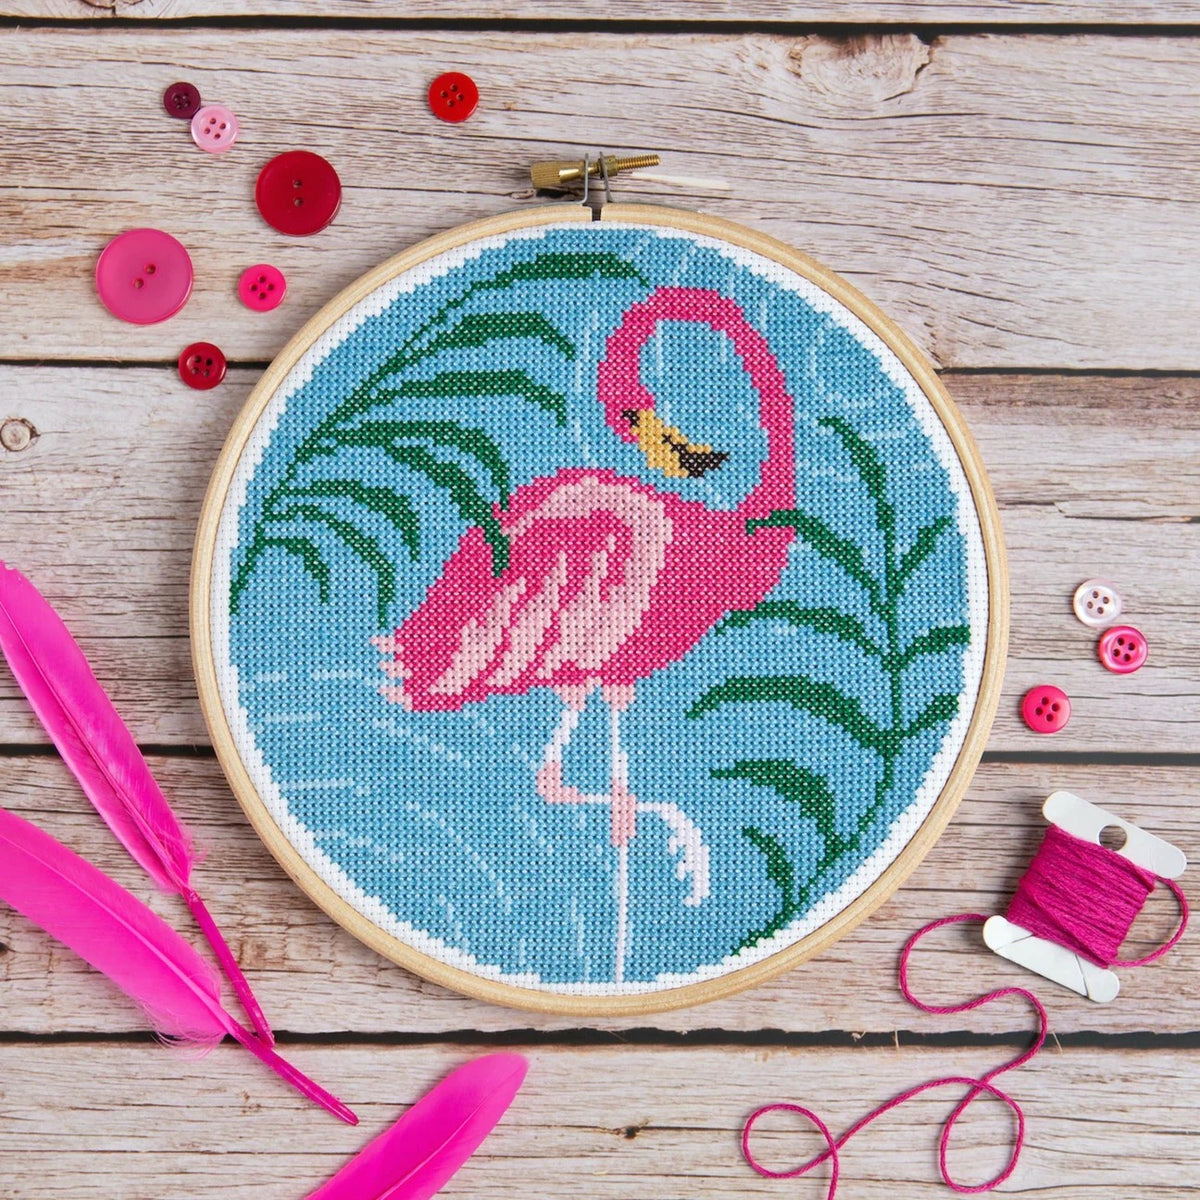 Flamingo Cross Stitch Kit